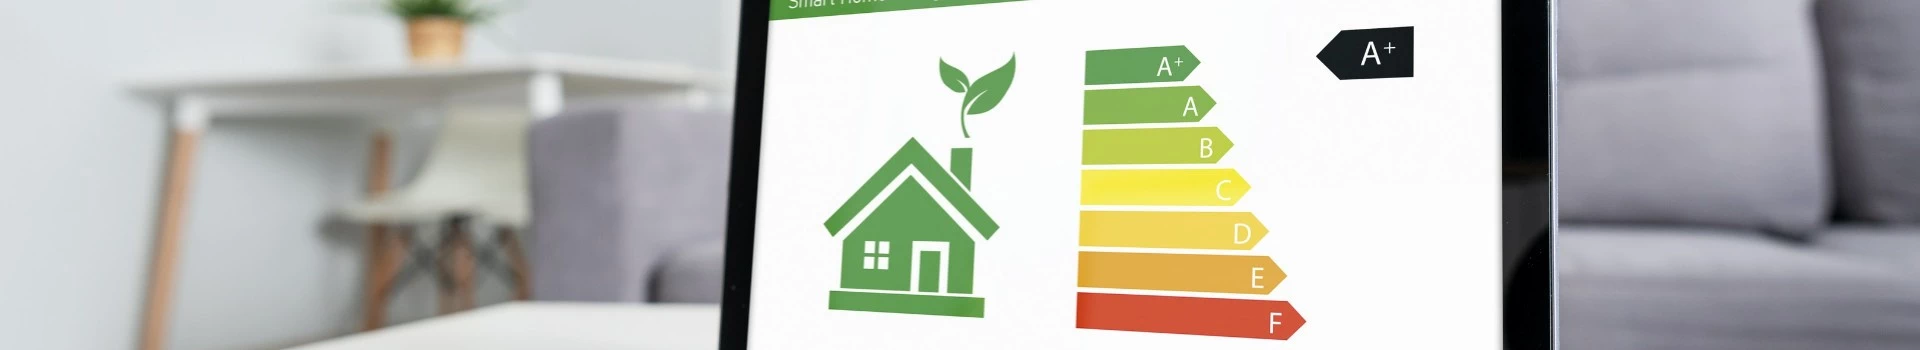 banner - ekran z oznaczeniami energooszczędności domu